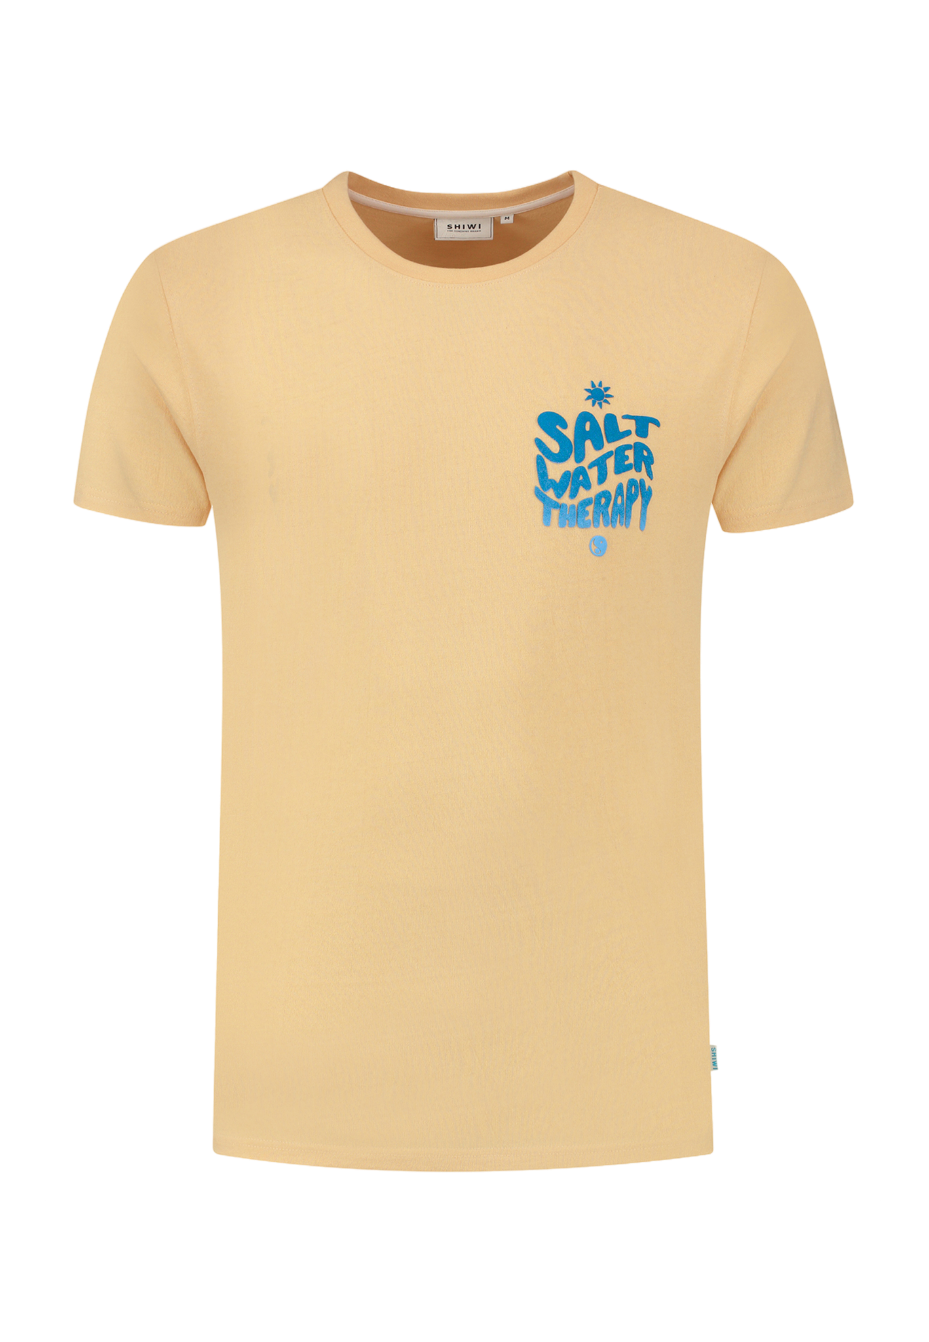 Shiwi - T-Shirt Salt Water Cayman Peach - Heren - Maat L - Regular-fit